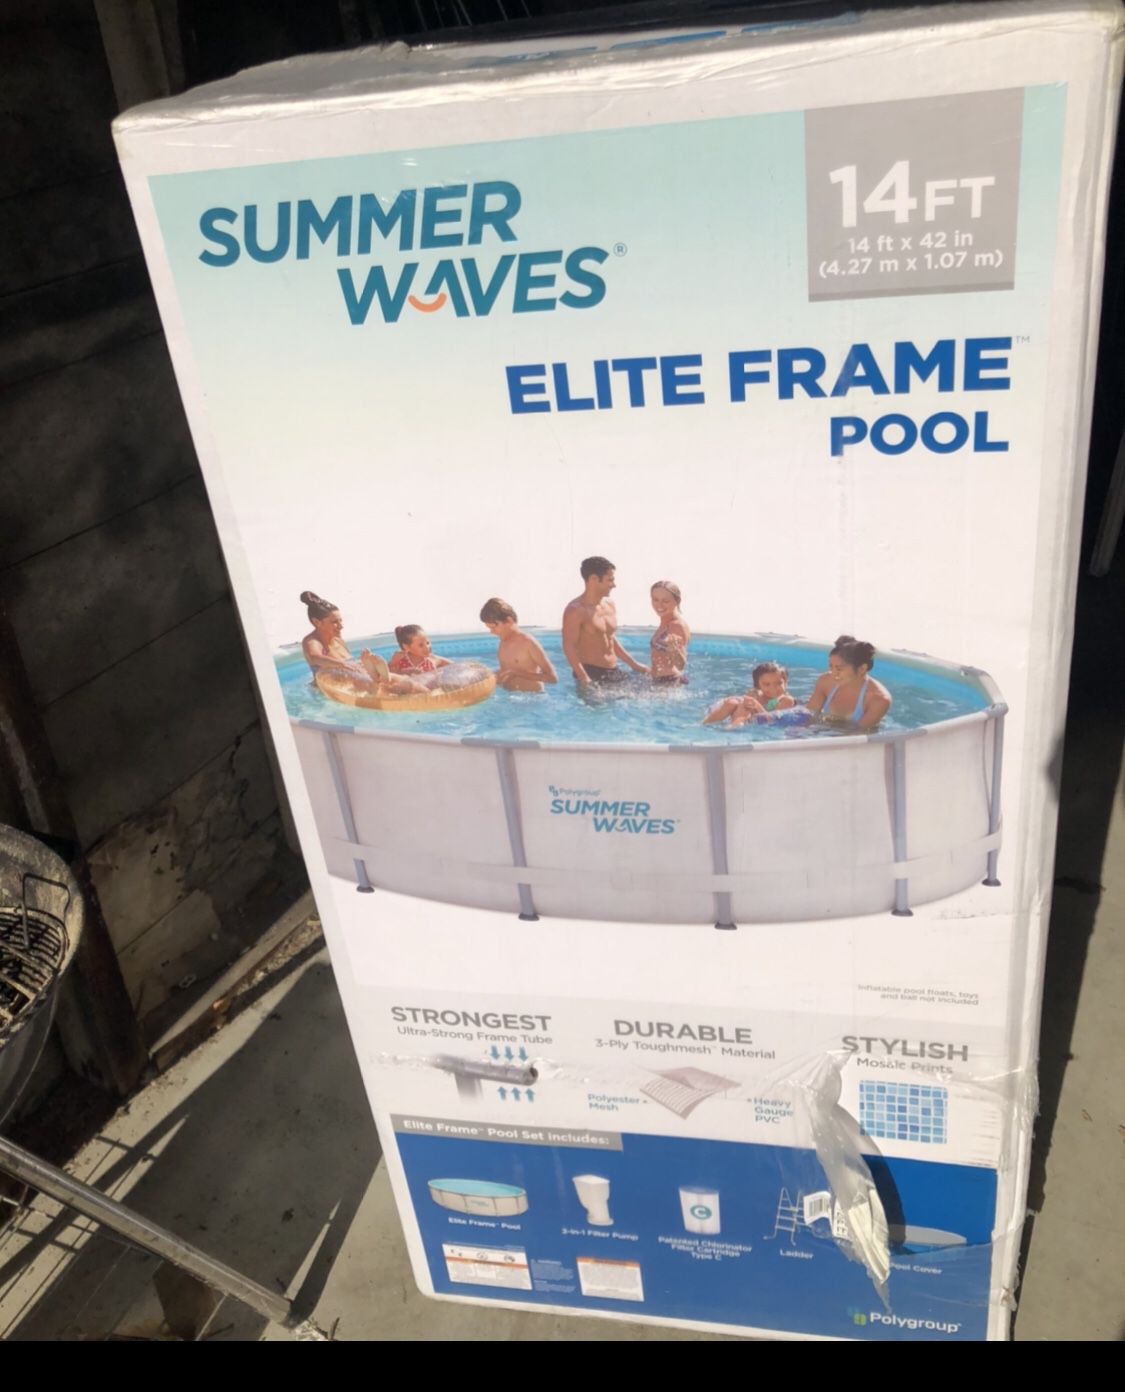 Summer waves 14ft elite frame pool